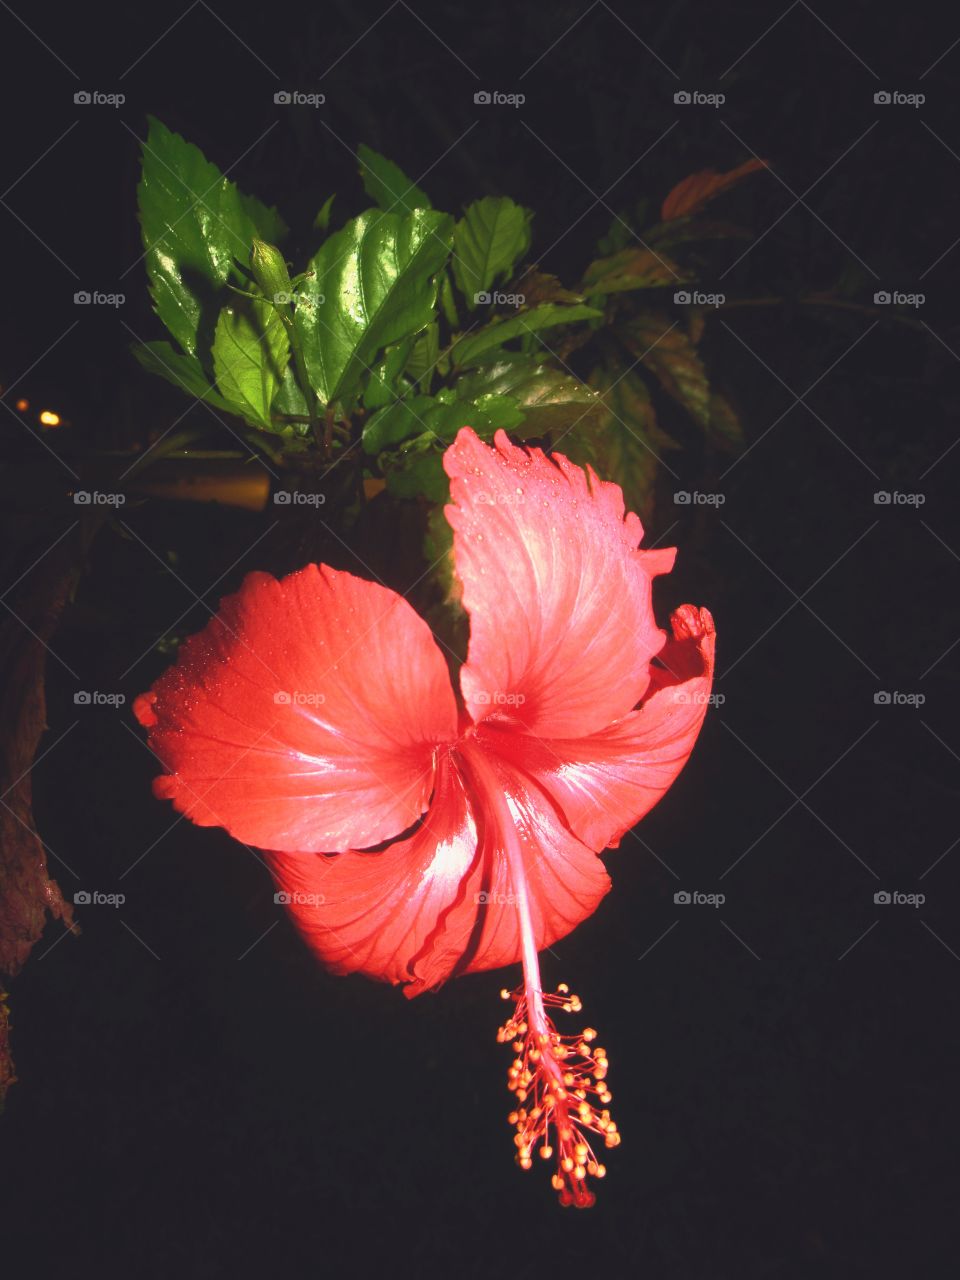 Red flower night (noite da flor vermelha)